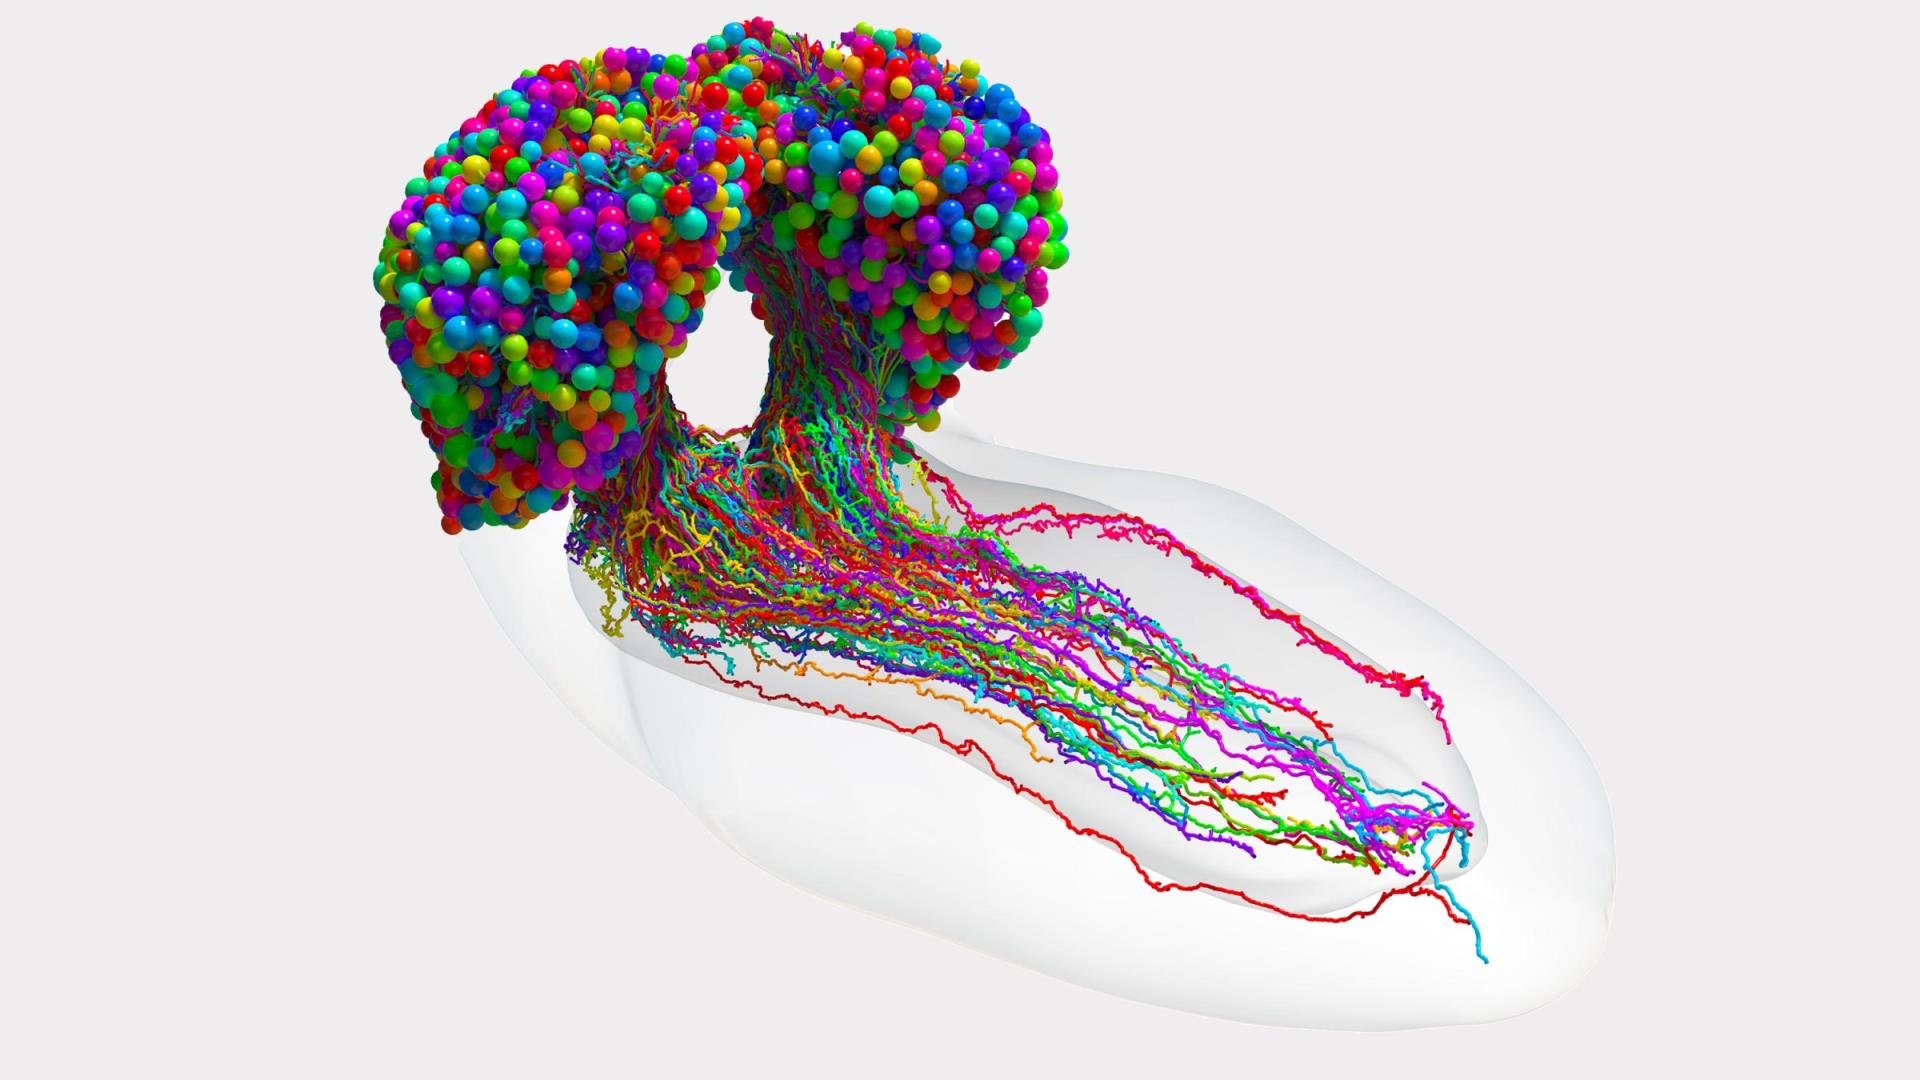 彩色球體大腦兩個半球的形狀，底部有幾根五顏六色的繩子